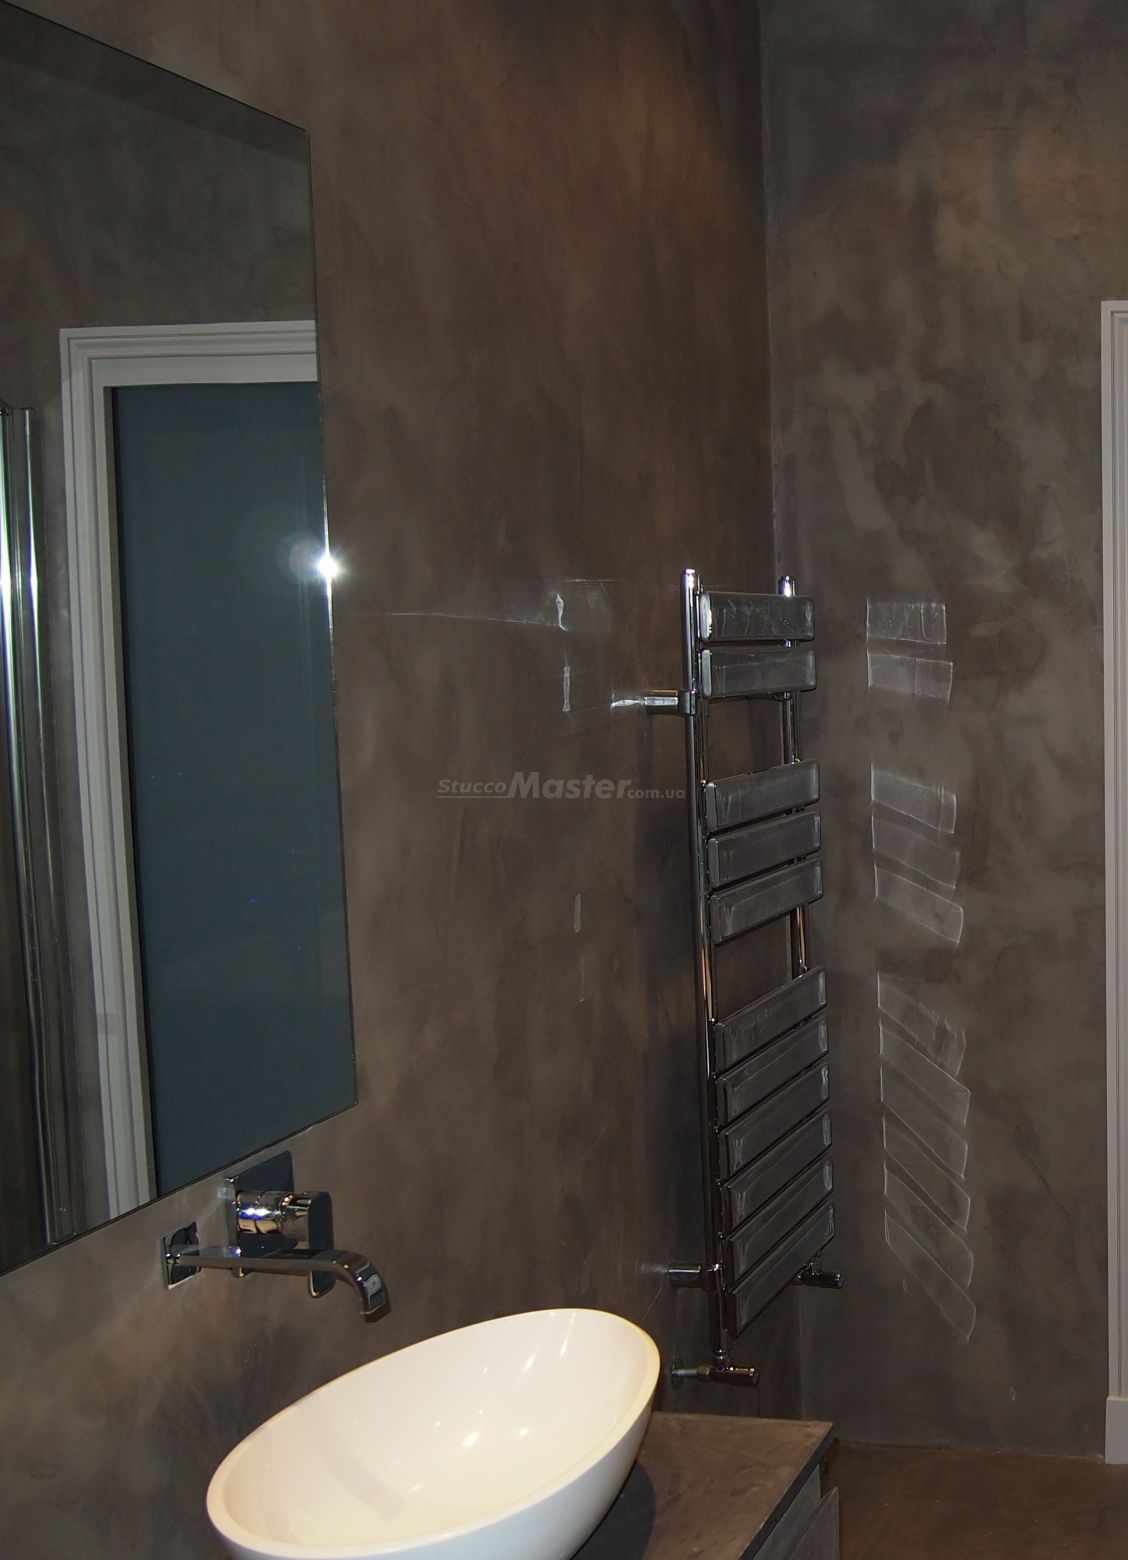 האפשרות להשתמש בטיח דקורטיבי יפה בעיצוב חדר האמבטיה